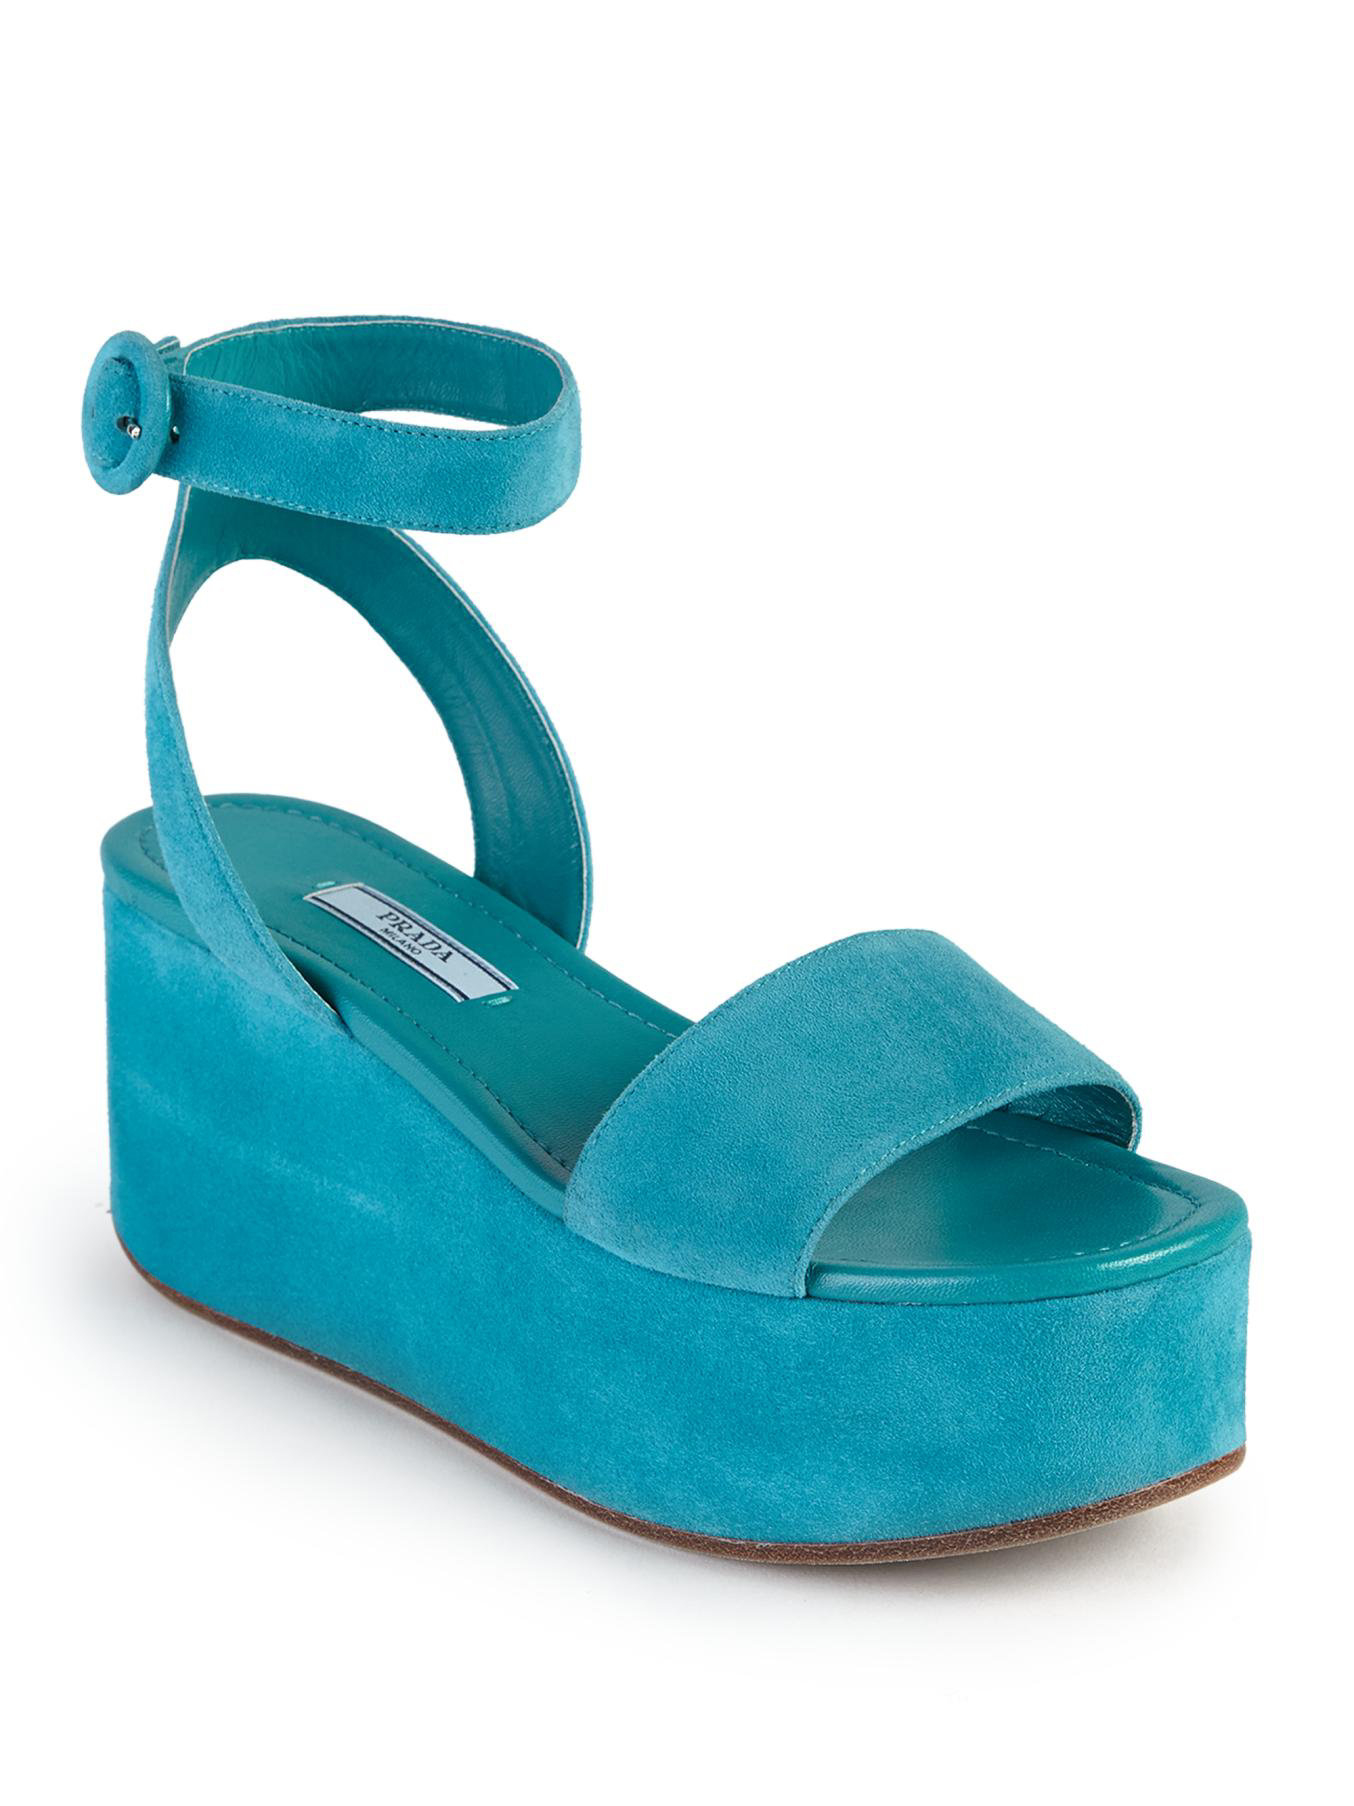 Prada Suede Platform Wedge Sandals in Blue | Lyst